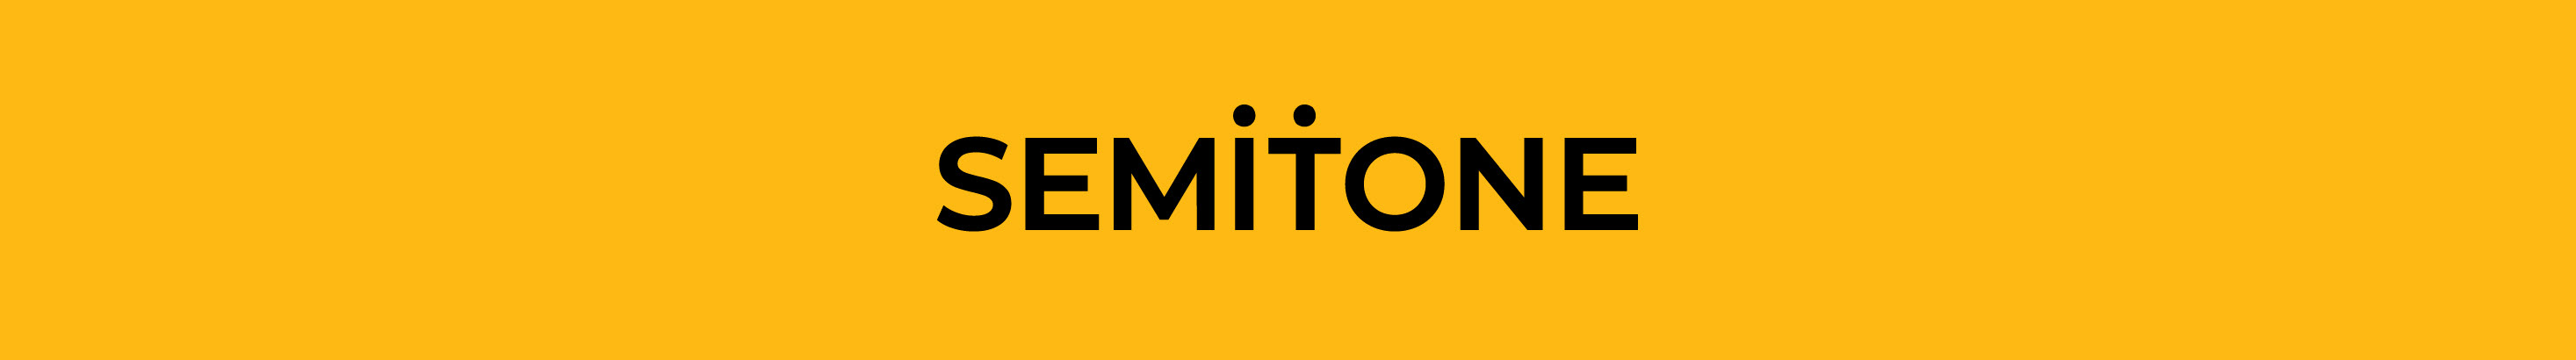 SEMITONE Design Studio's profile banner